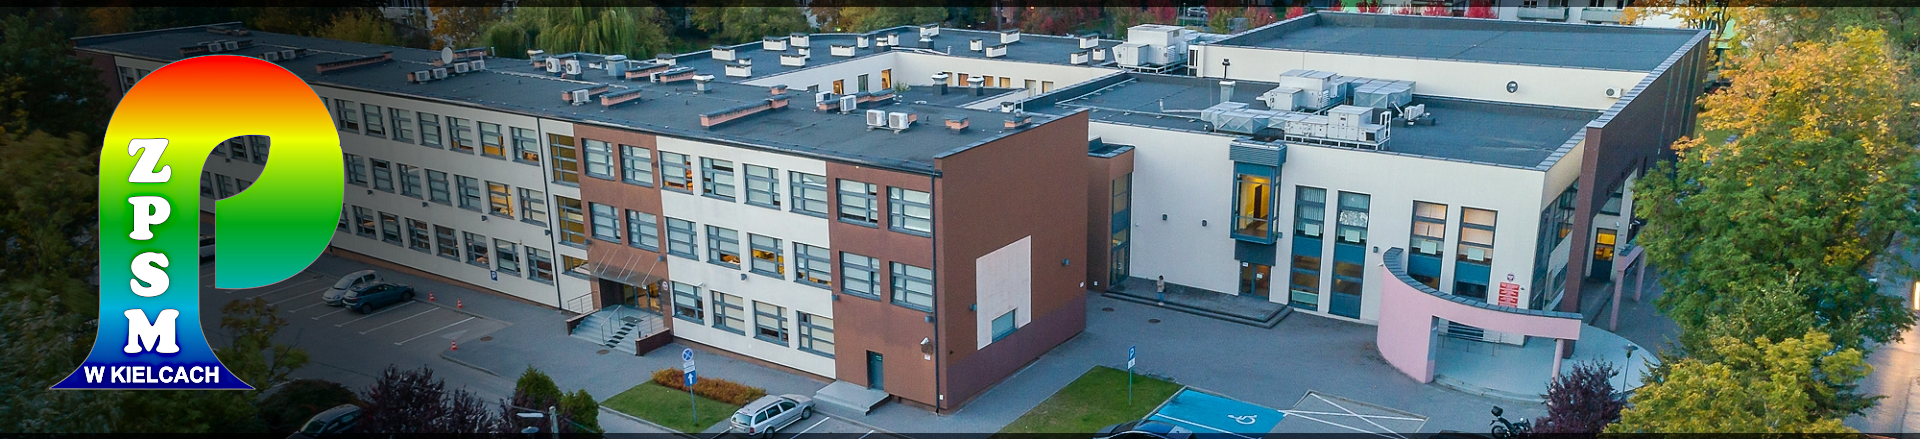 Zdjęcie budynku ZPSM w Kielcach, po lewej stronie logo szkoły - tęczowa tuba z napisem ZPSM w Kielcach